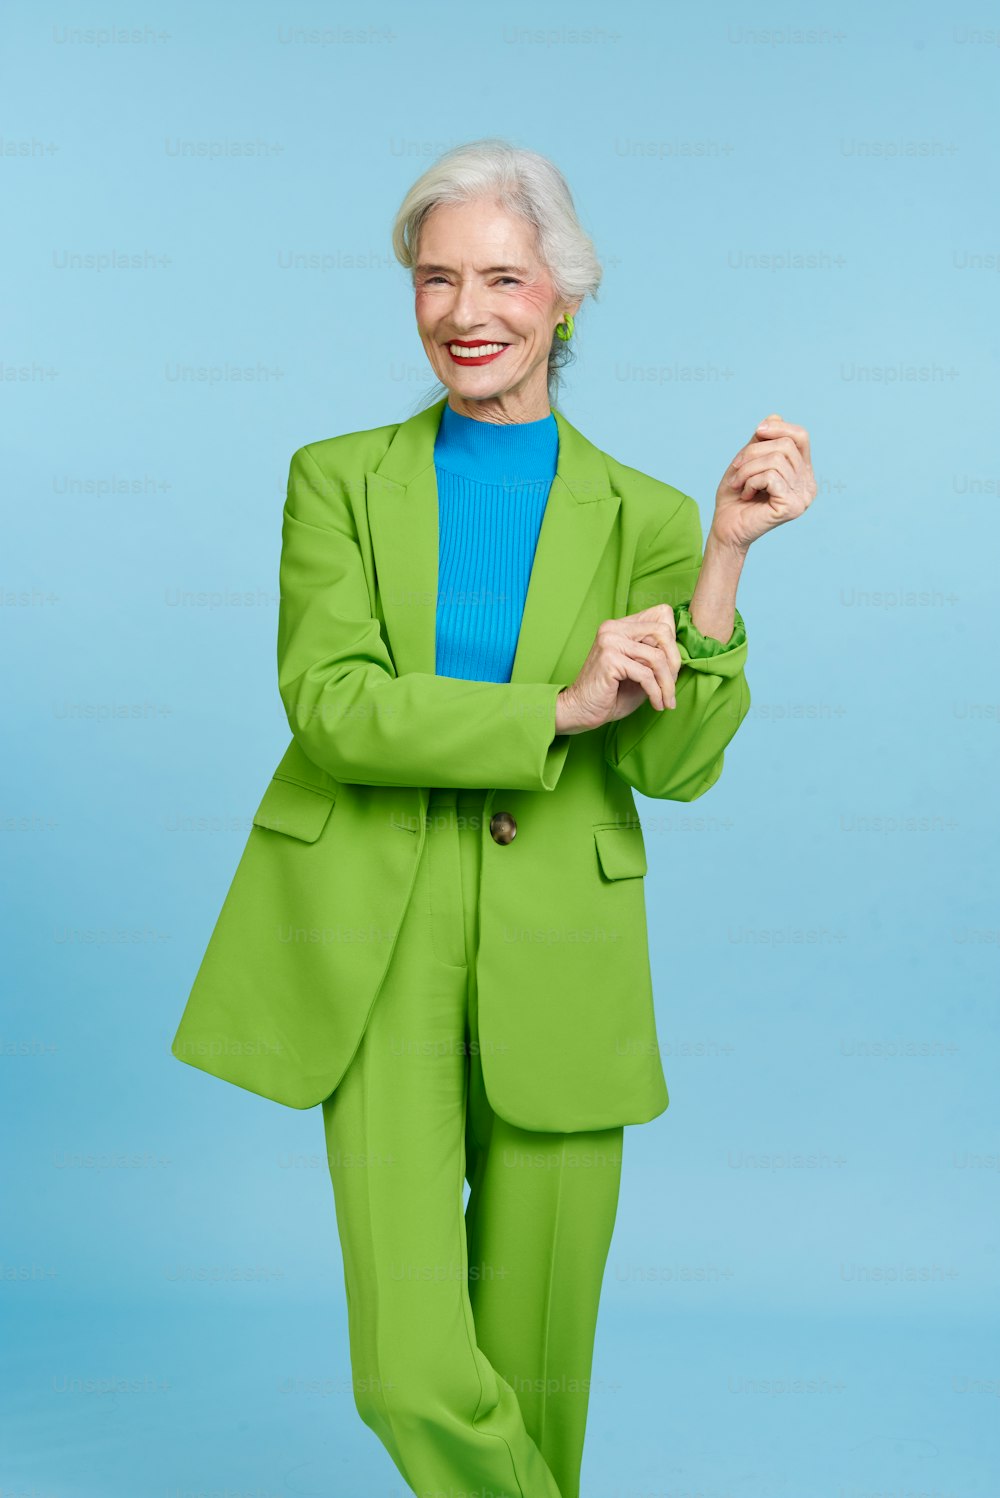 Una mujer con un traje verde posando para una foto